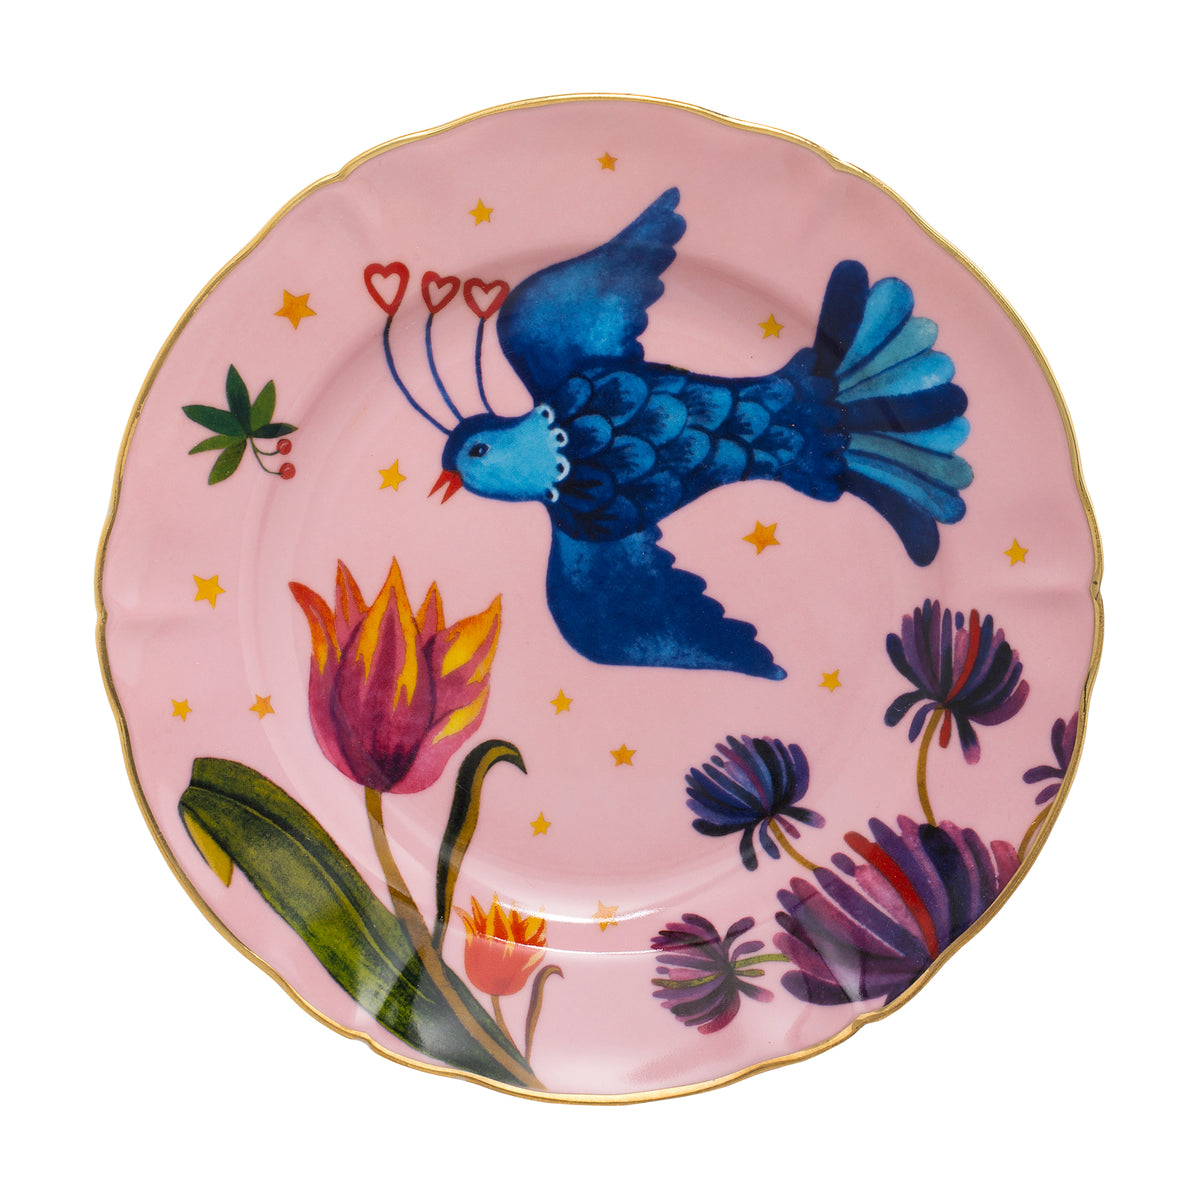 LITTLE BIRD Porcelain Plate. 20 cm